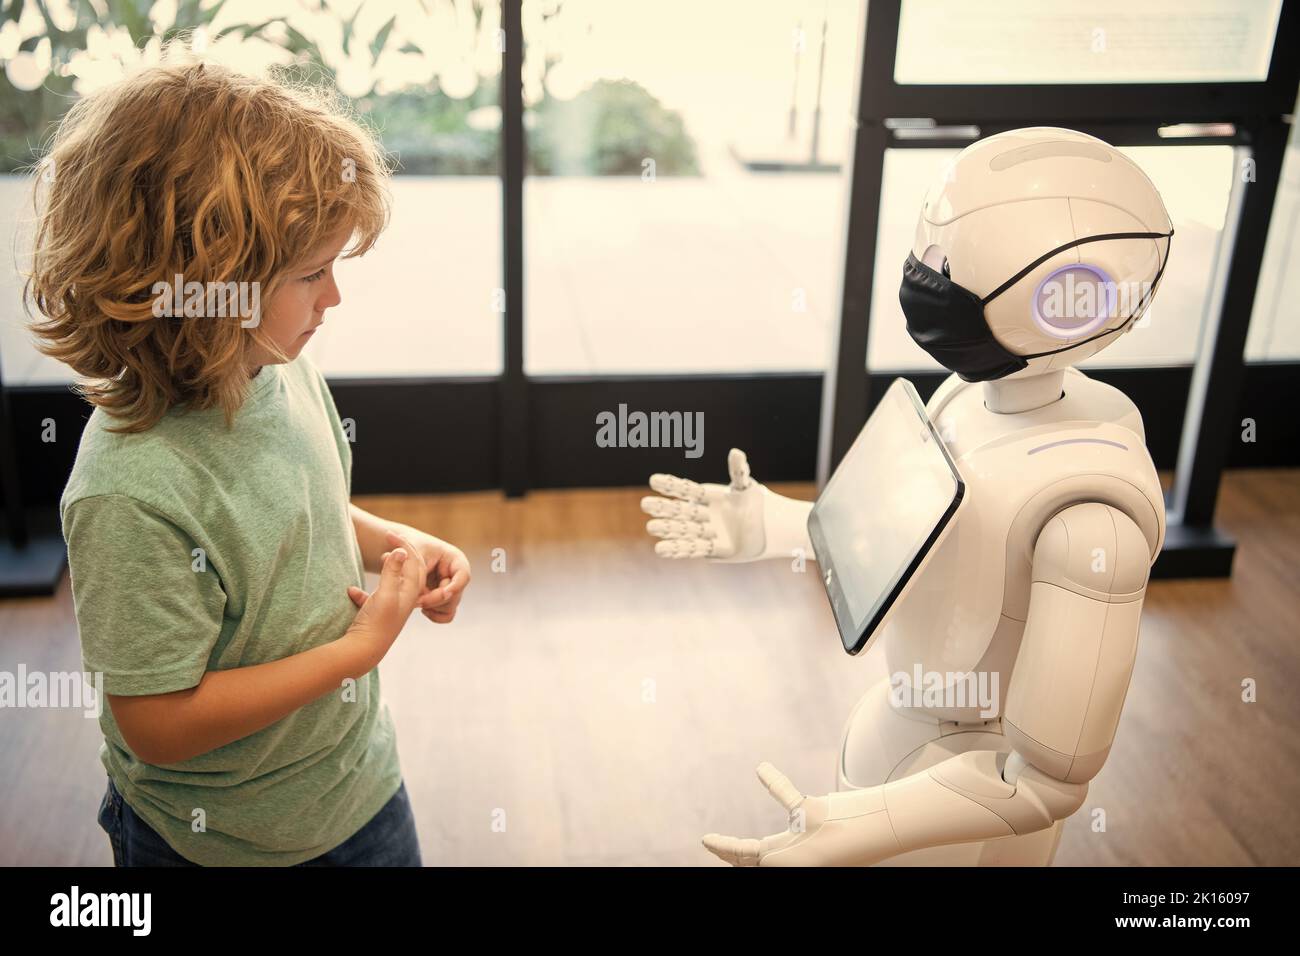 l'enfant concentré interagit avec l'intelligence artificielle de robot, la communication Banque D'Images